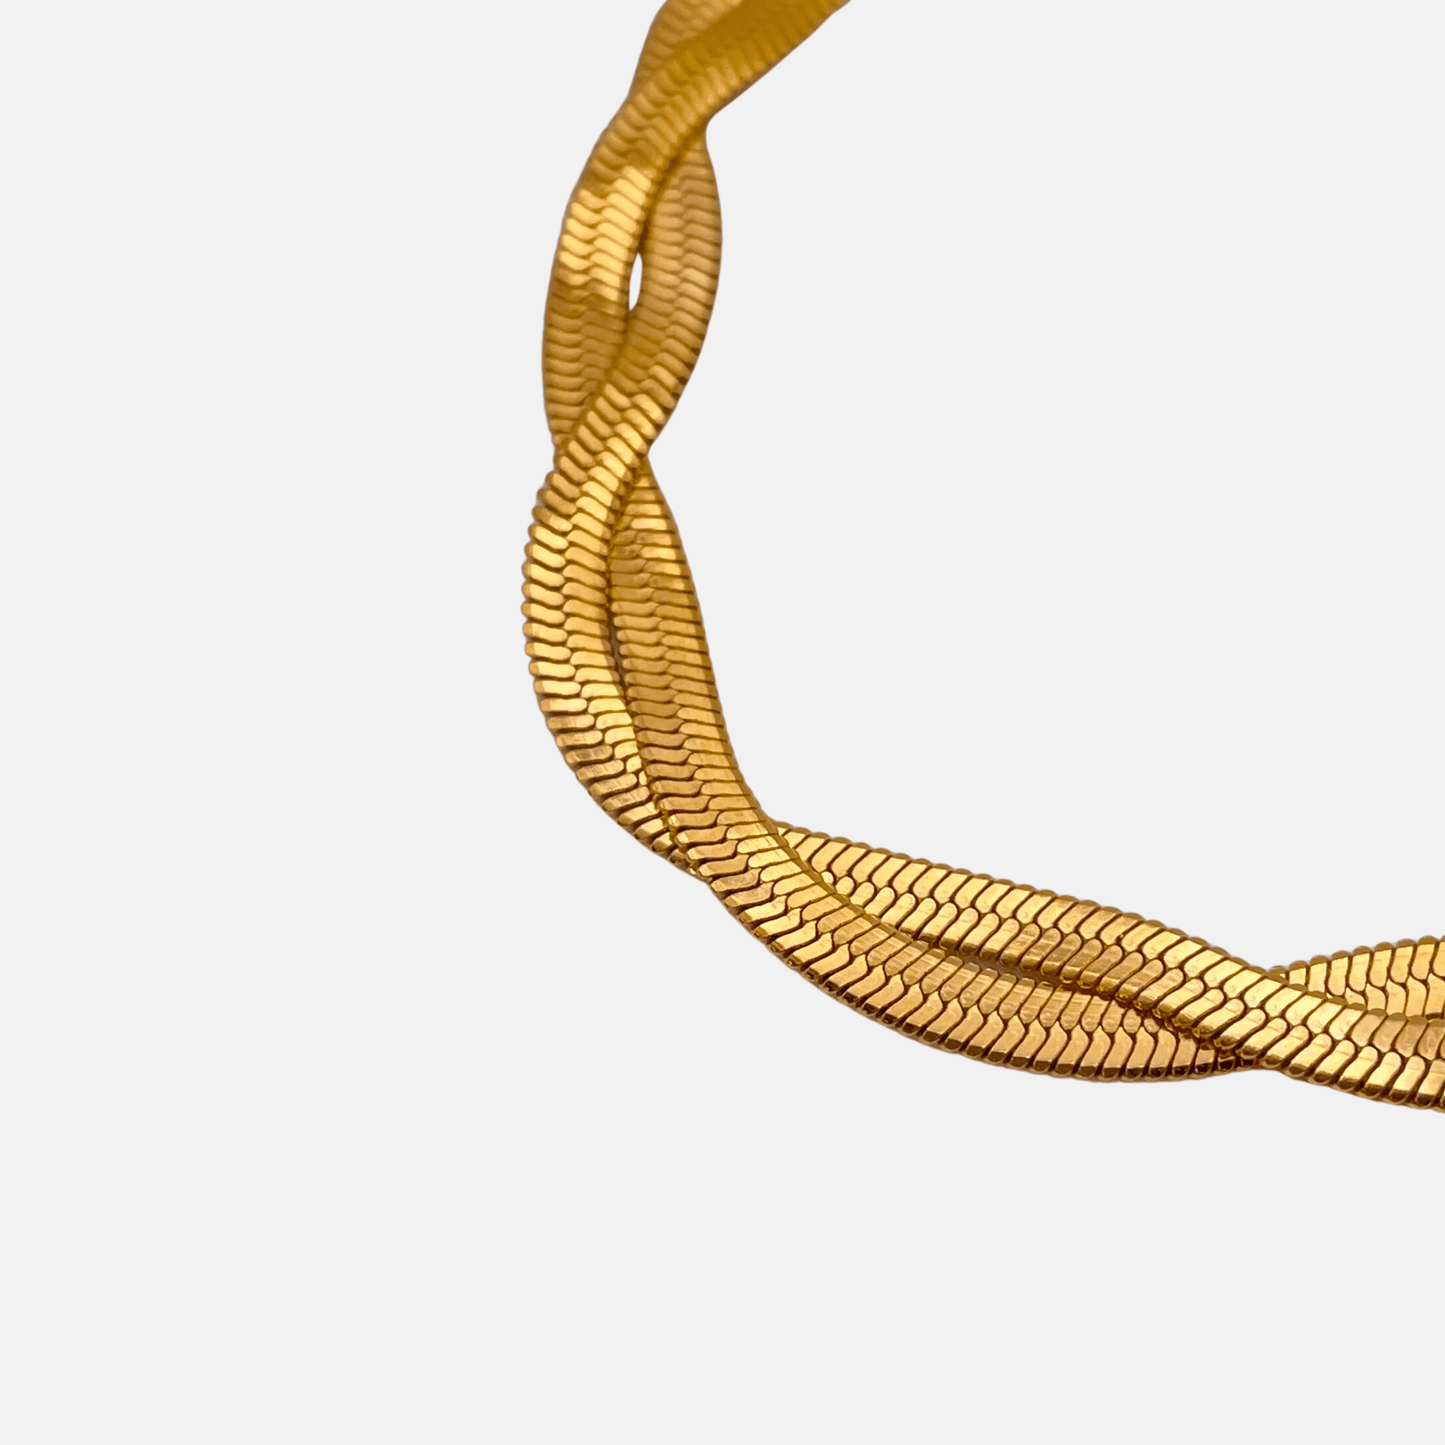 Sleek and Stylish Women's Herringbone Bracelet - Lustrous 18K Gold Plating for Effortless Glamour"